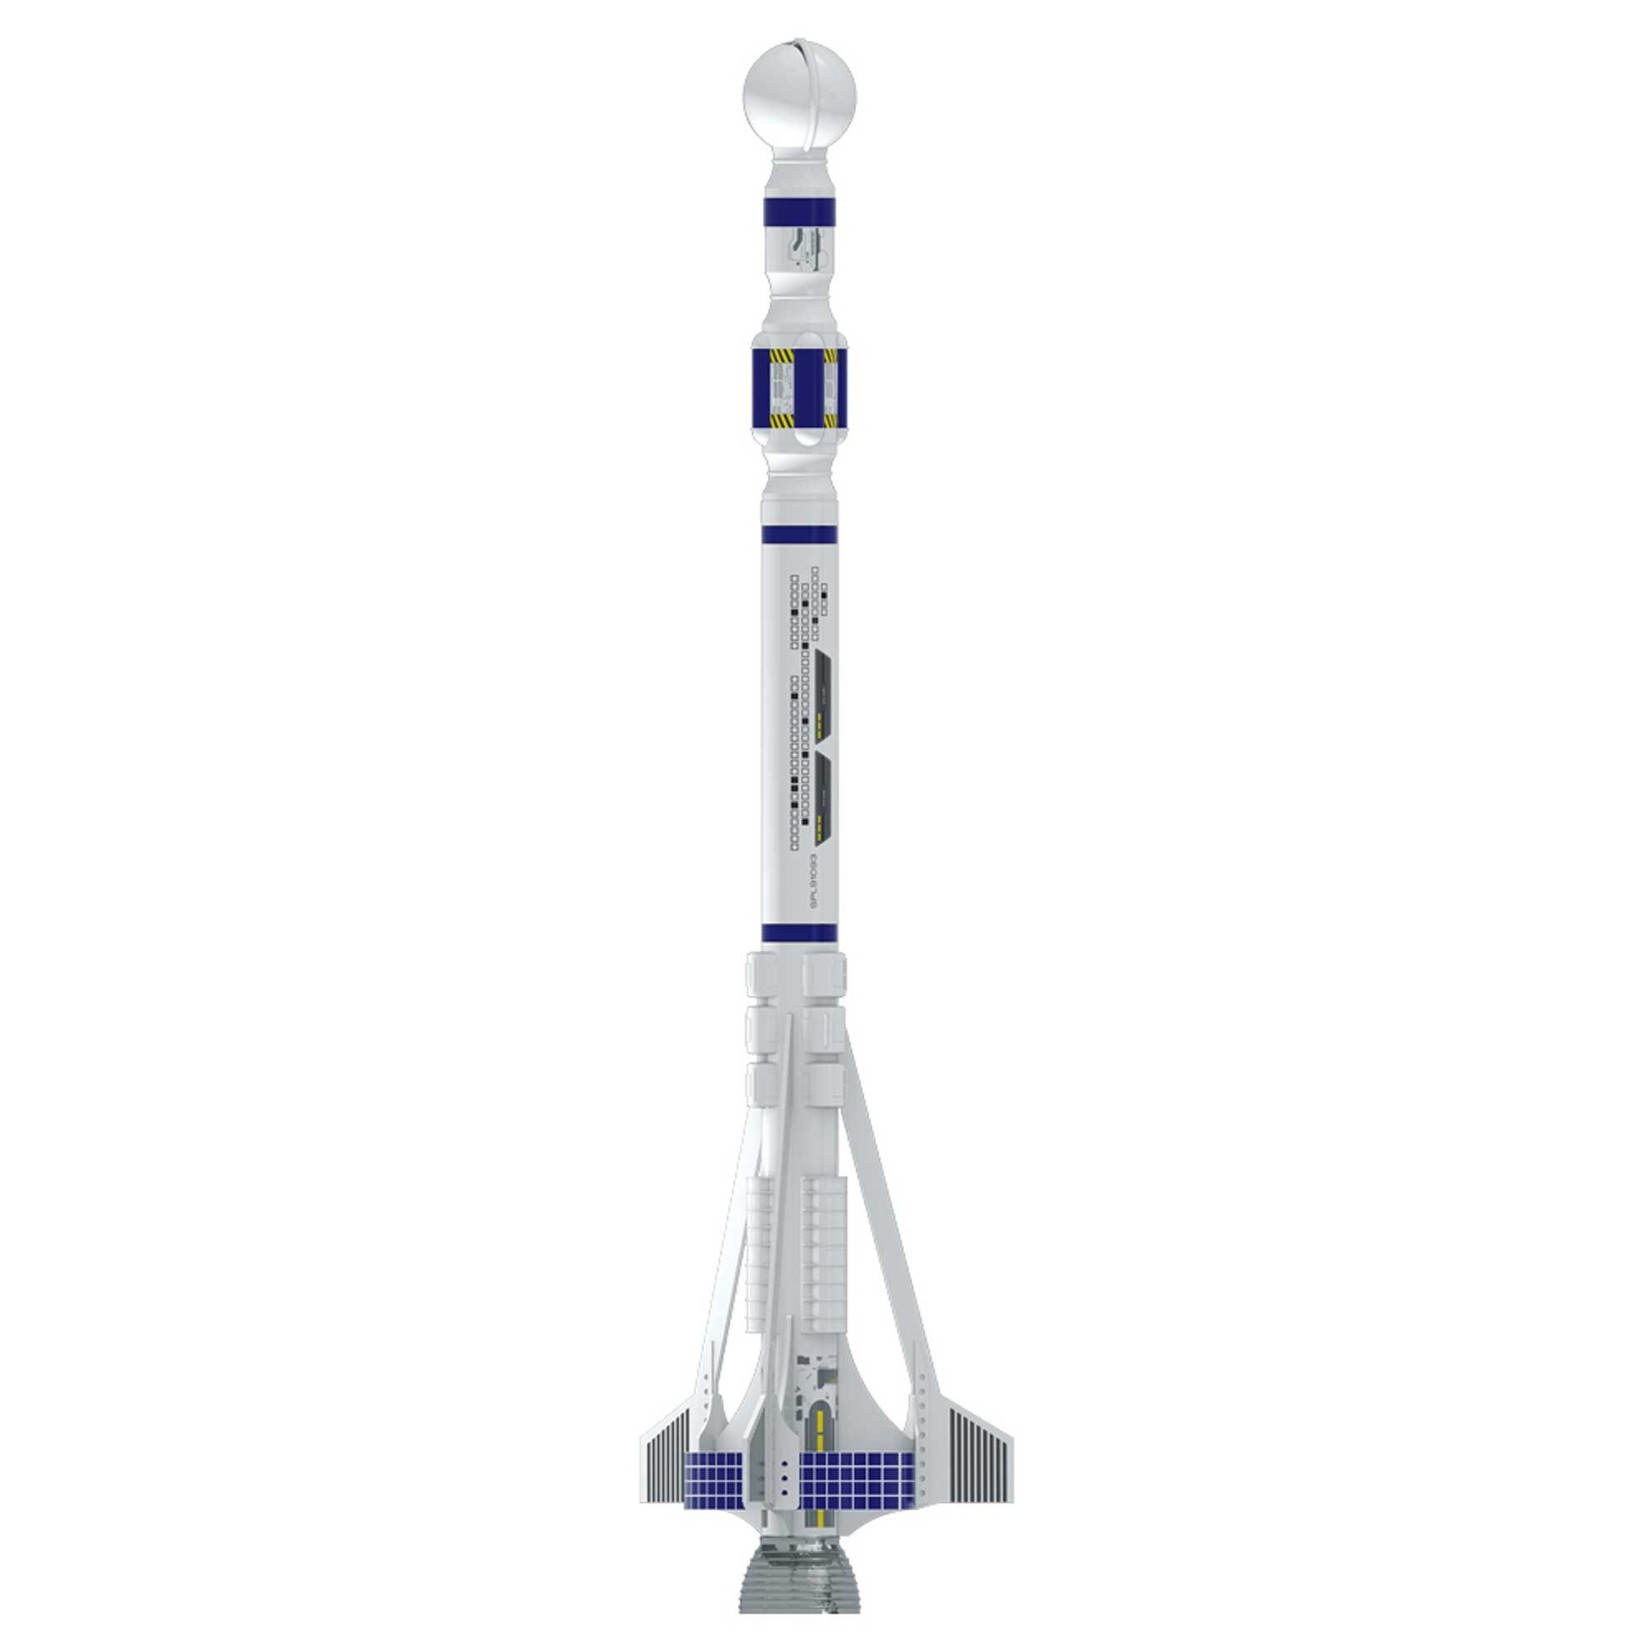 Estes Rockets Destination Mars Mars Longship rocket kit